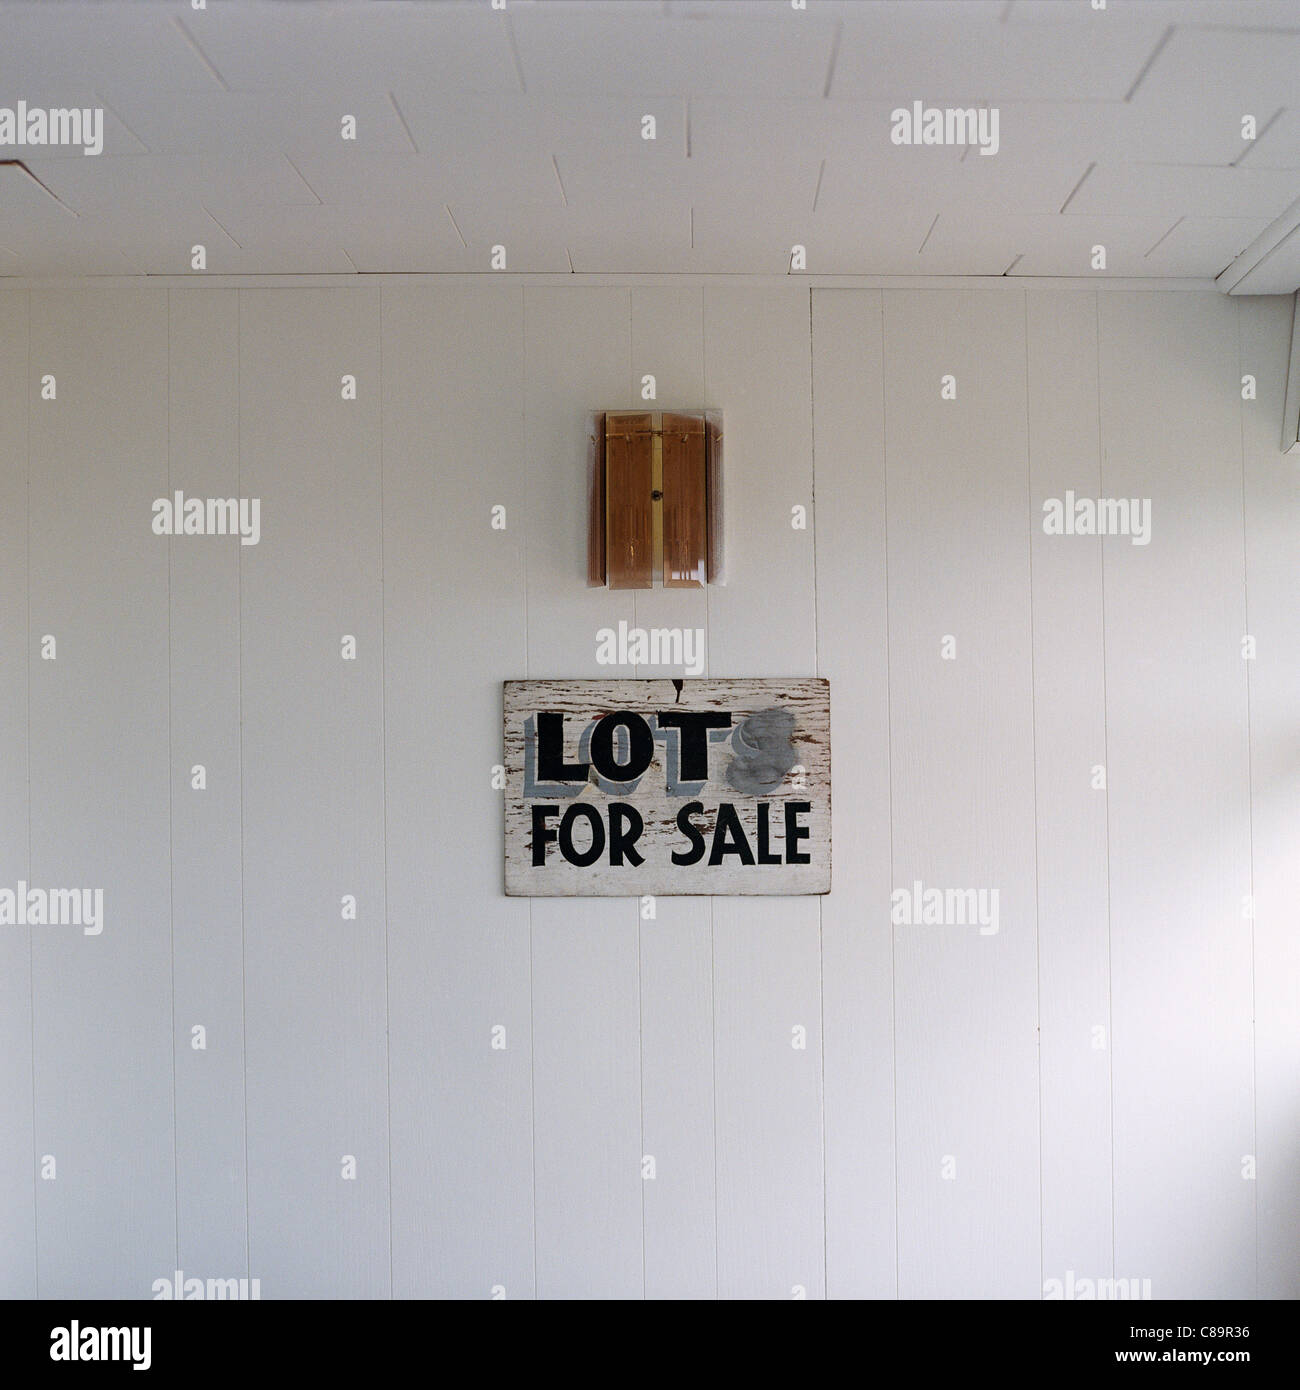 Für Verkaufsschild auf ein Geschäftshaus, Kanada Stockfoto